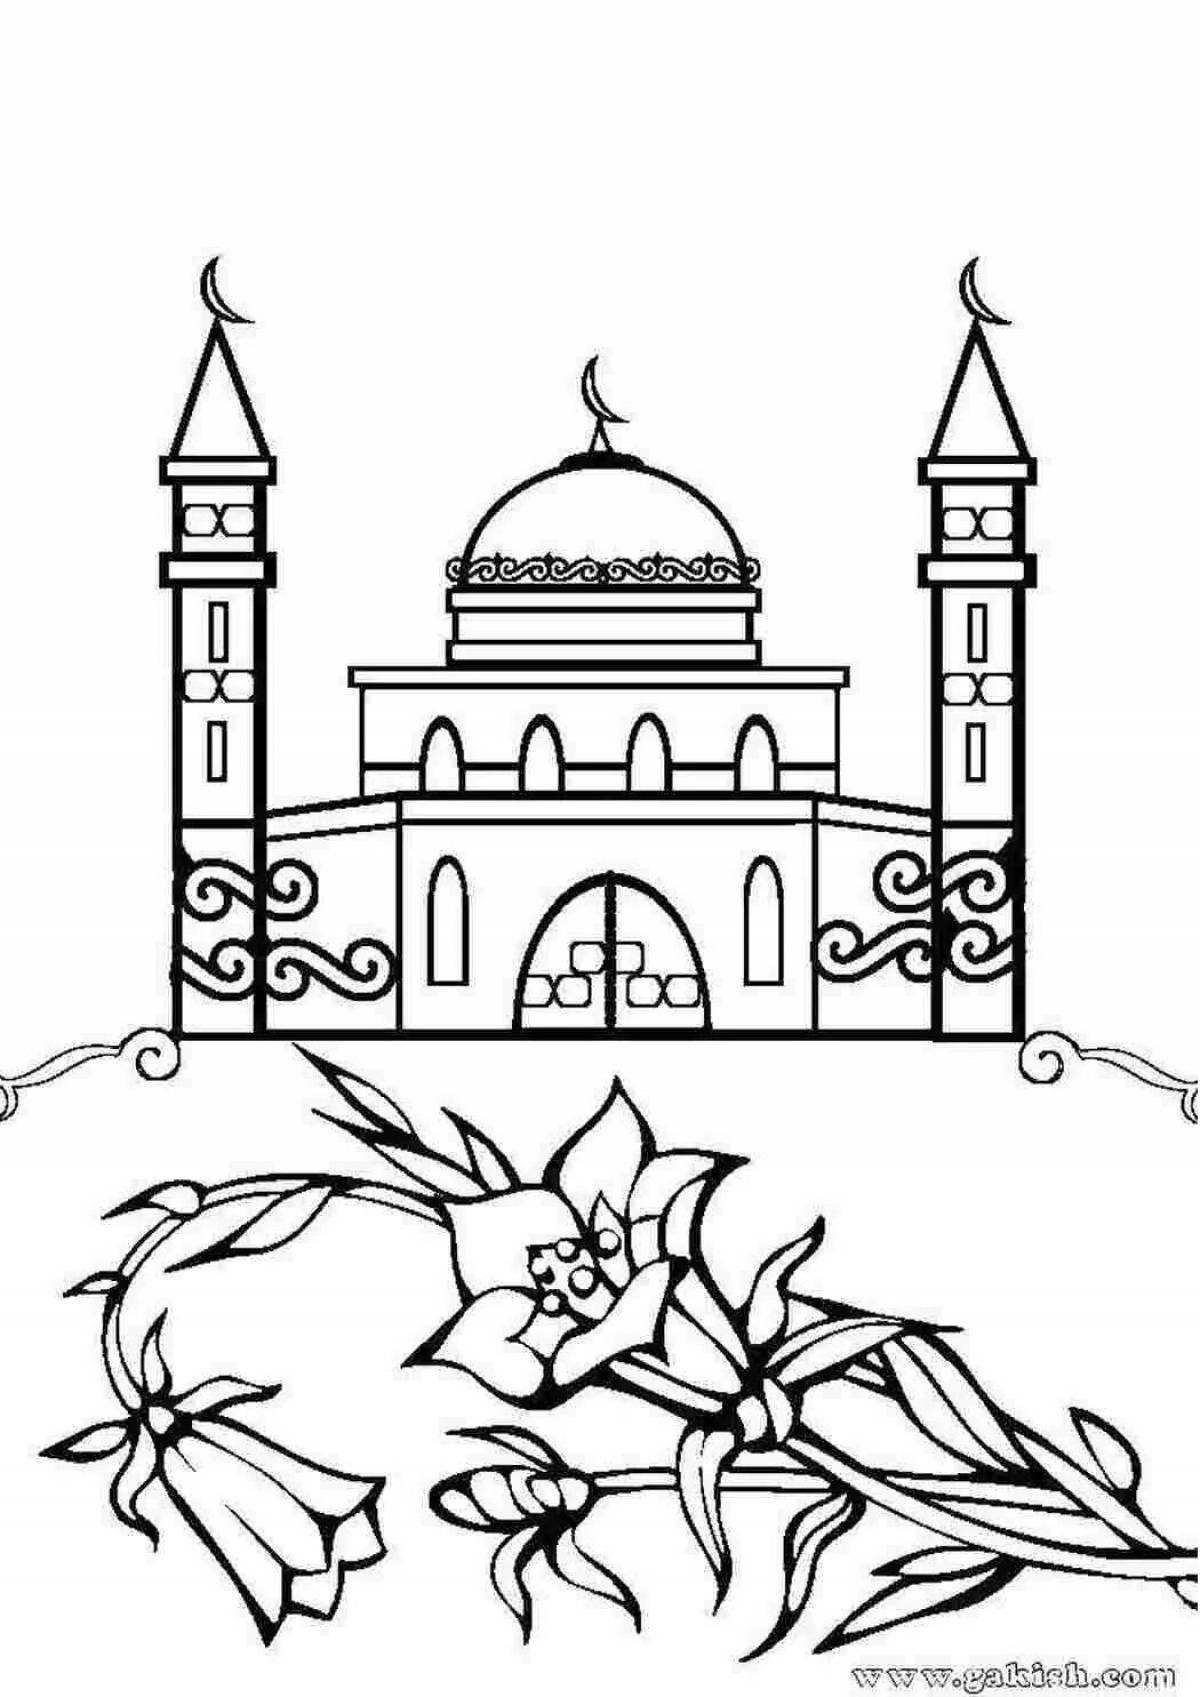 Joyful coloring islam